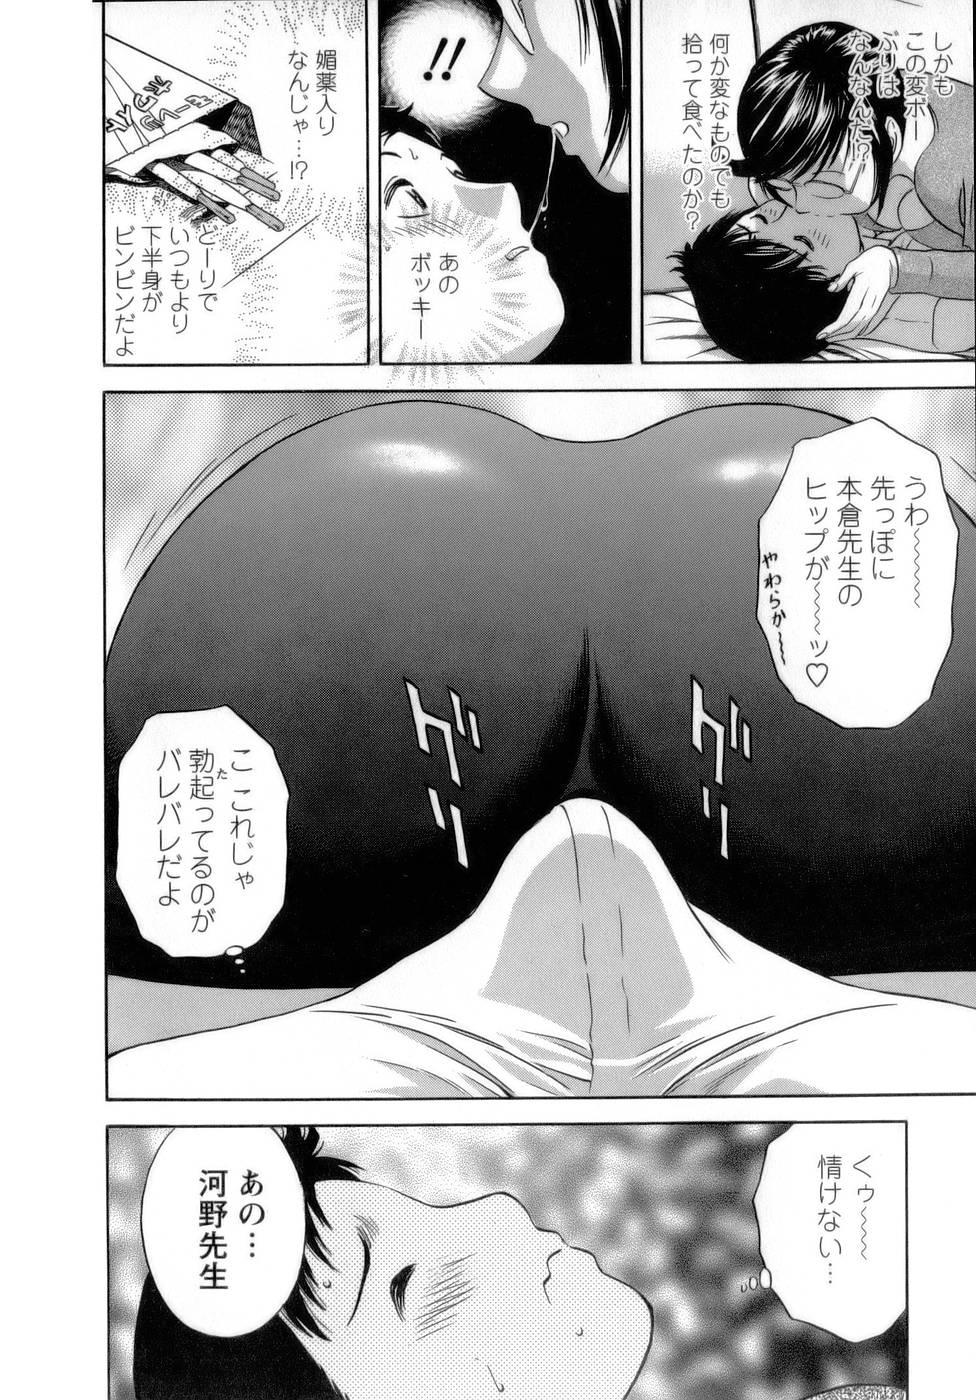 [Hidemaru] Mo-Retsu! Boin Sensei (Boing Boing Teacher) Vol.1 121